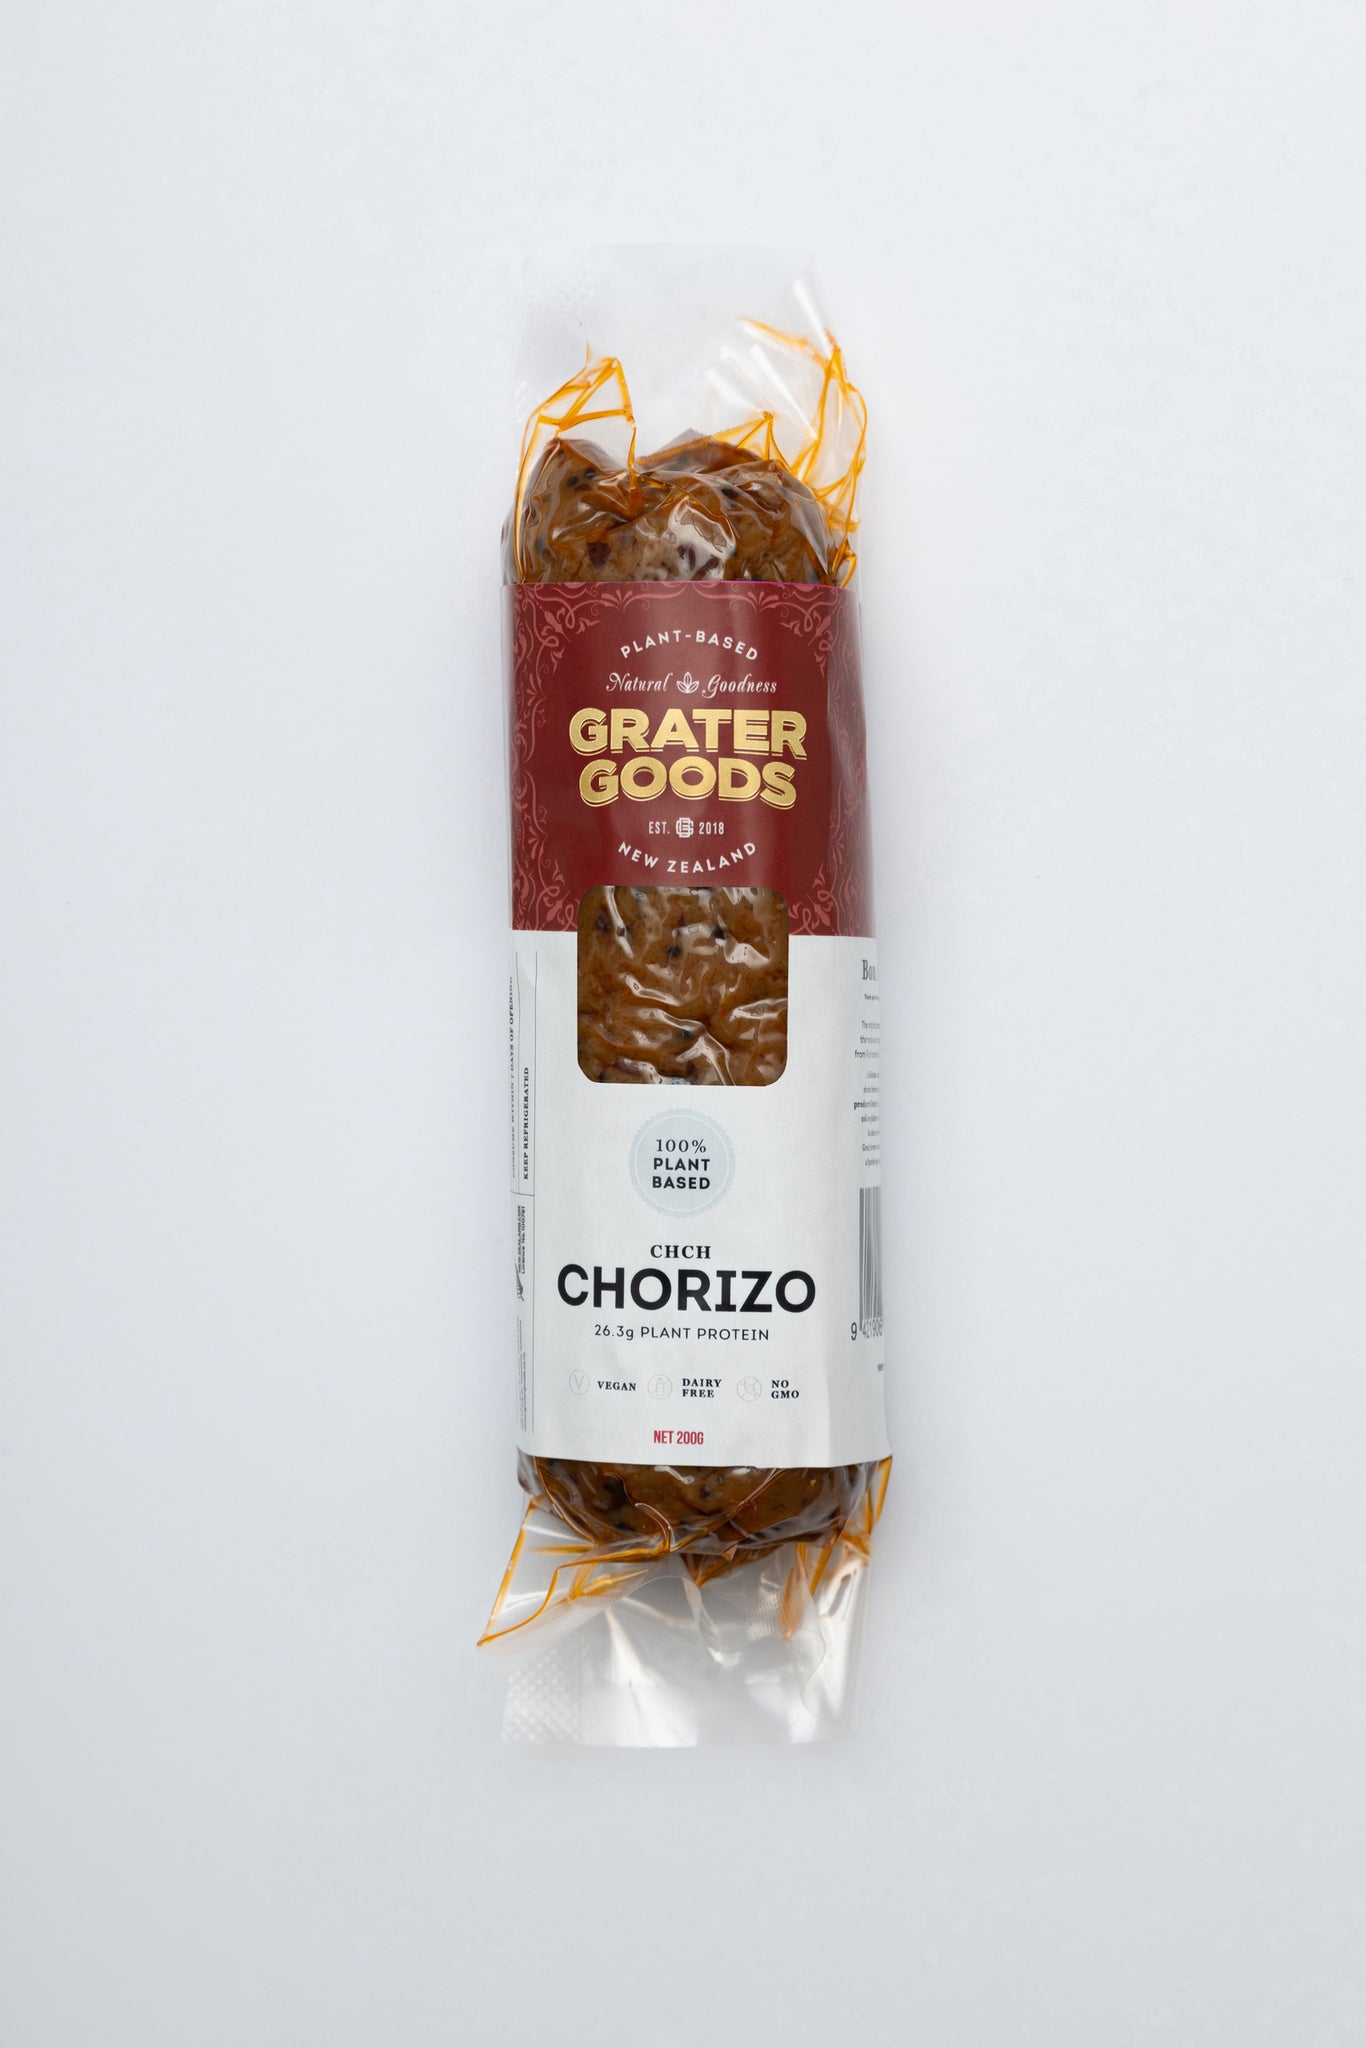 CHCH Chorizo 200g